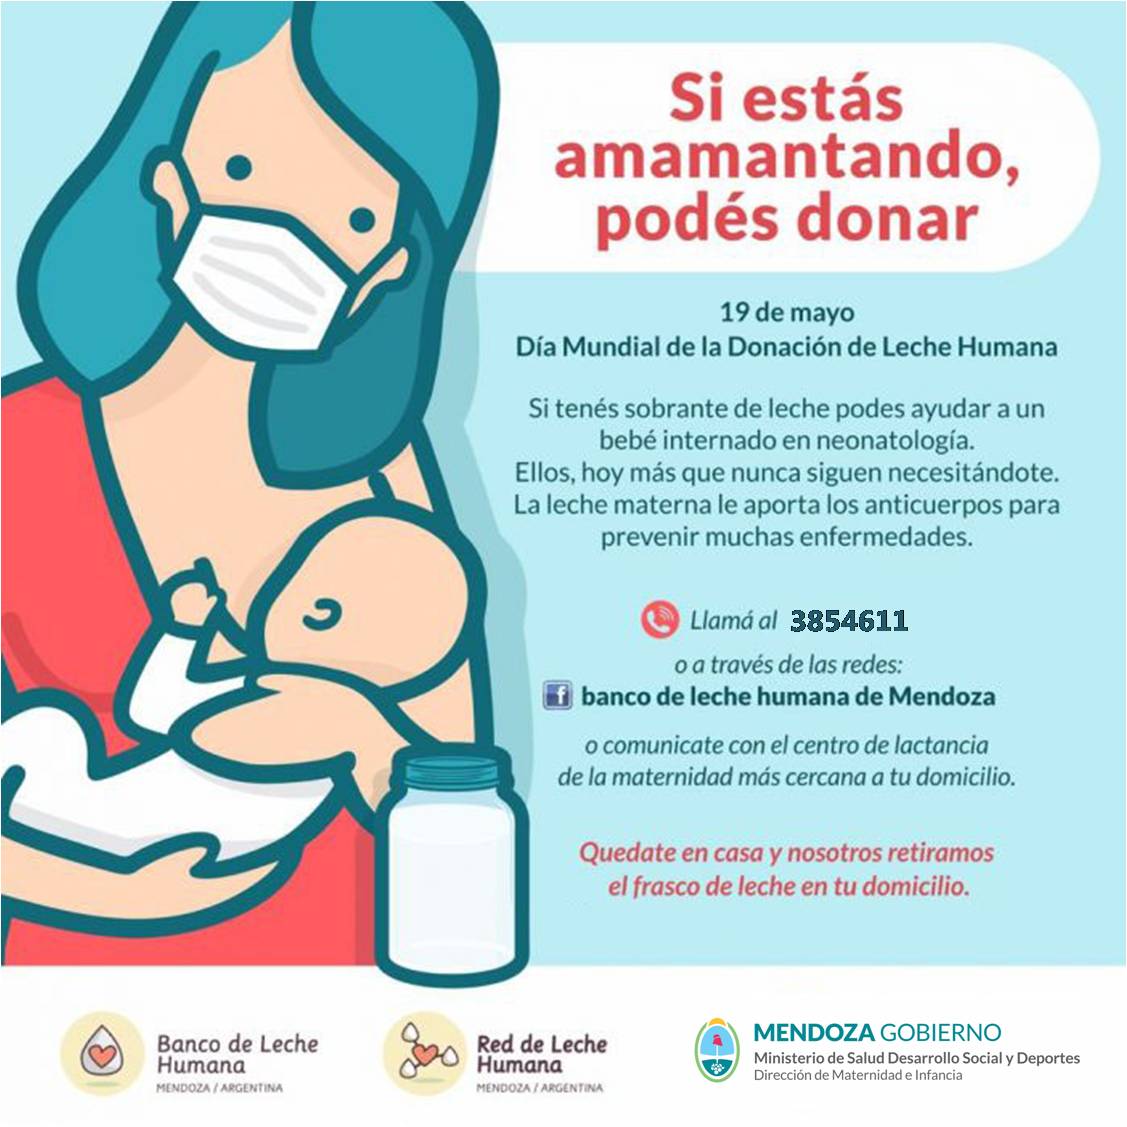 Día Mundial de la Donación de Leche Humana: Mendoza y el apoyo a la lactancia materna